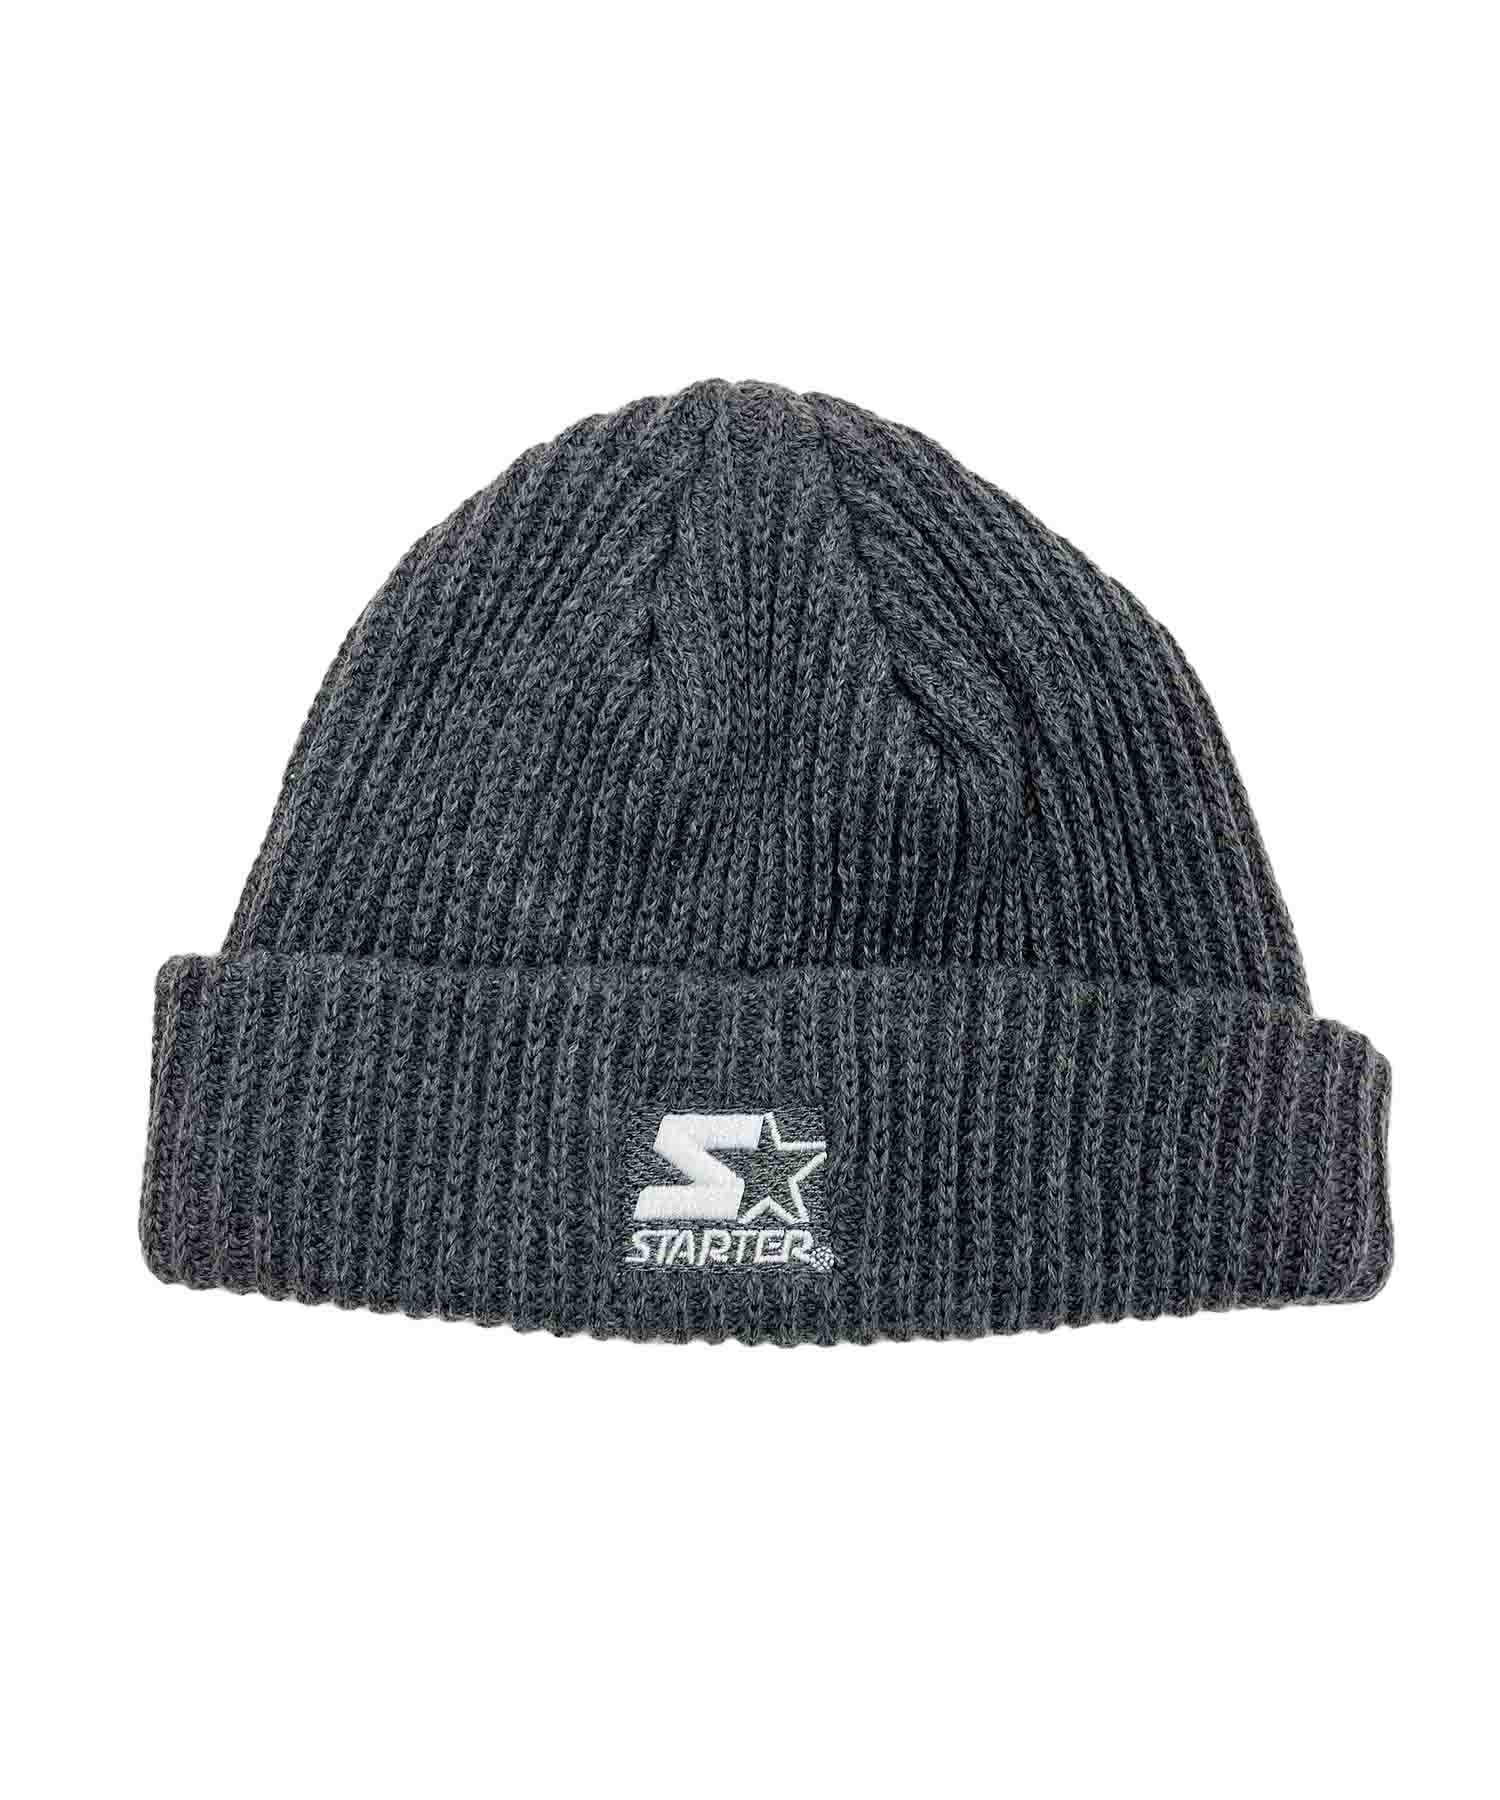 STARTER/スターター キッズ ビーニー ニット帽 ST-KNCPK02 帽子 